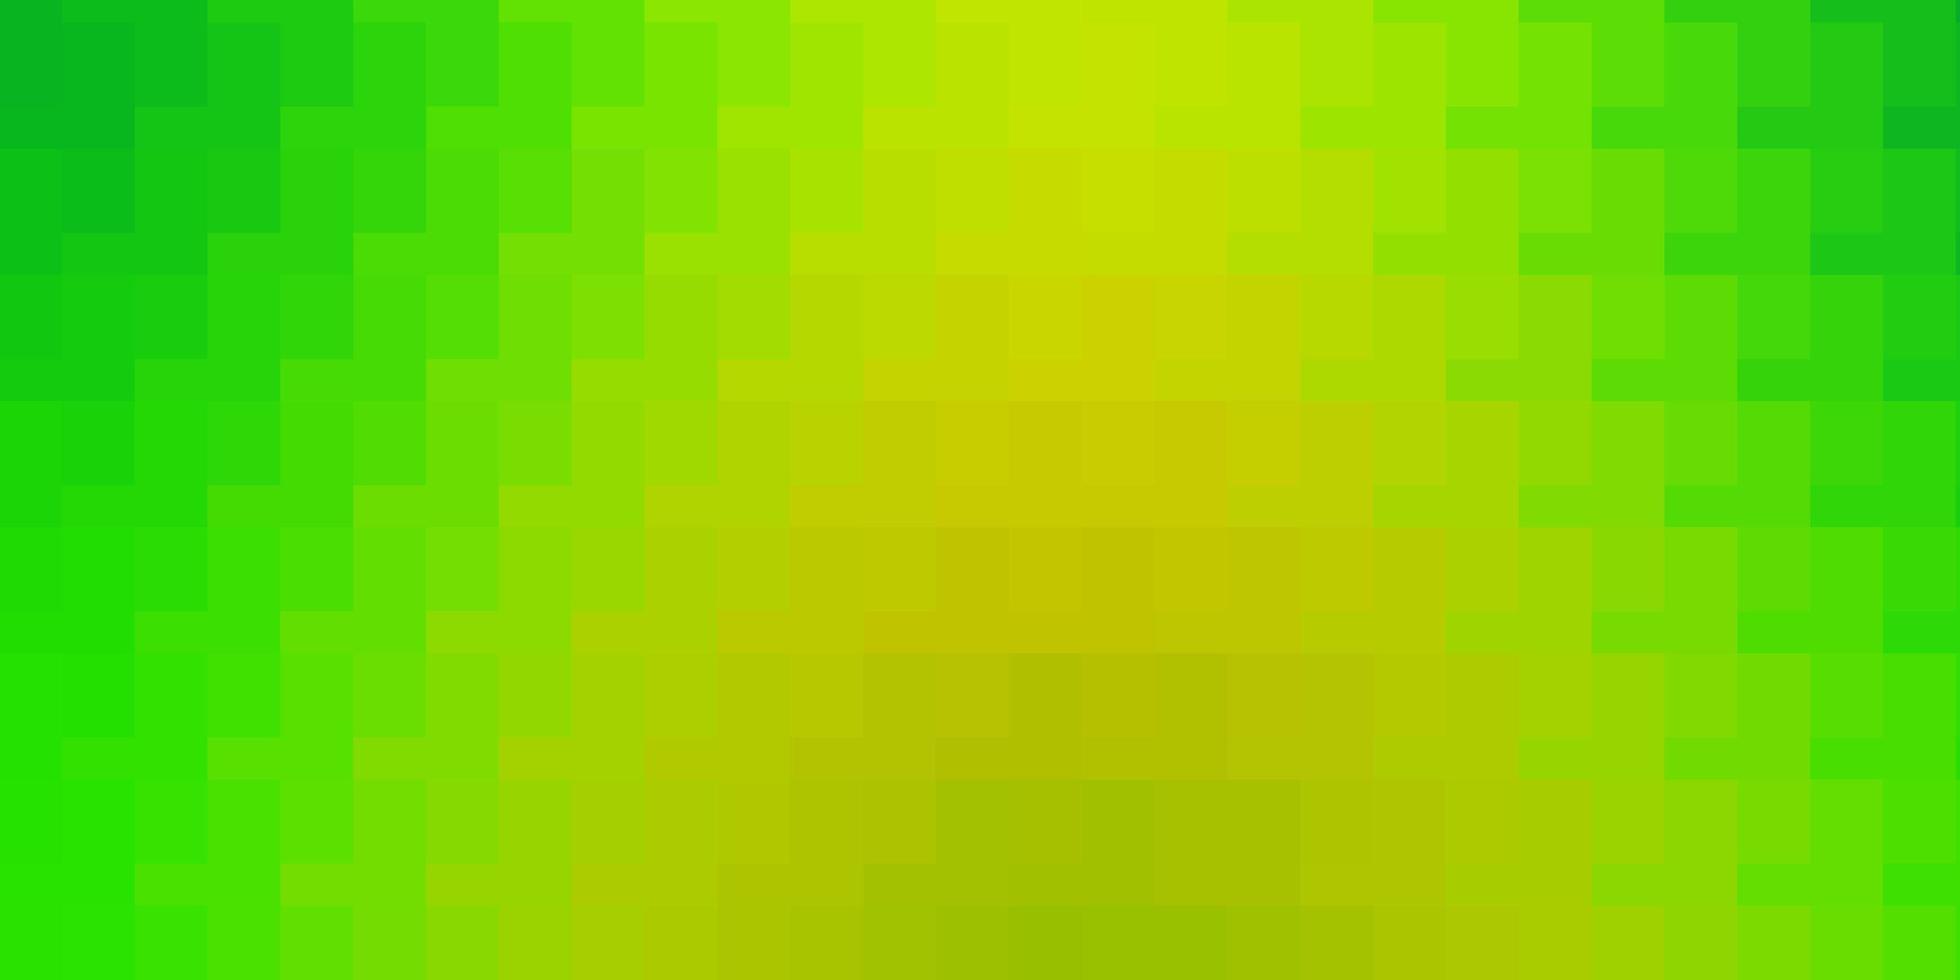 hellgrün-gelbe Vektortextur im rechteckigen modernen Design mit Rechtecken im abstrakten Stilmuster für Geschäftsbroschüren-Broschüren vektor